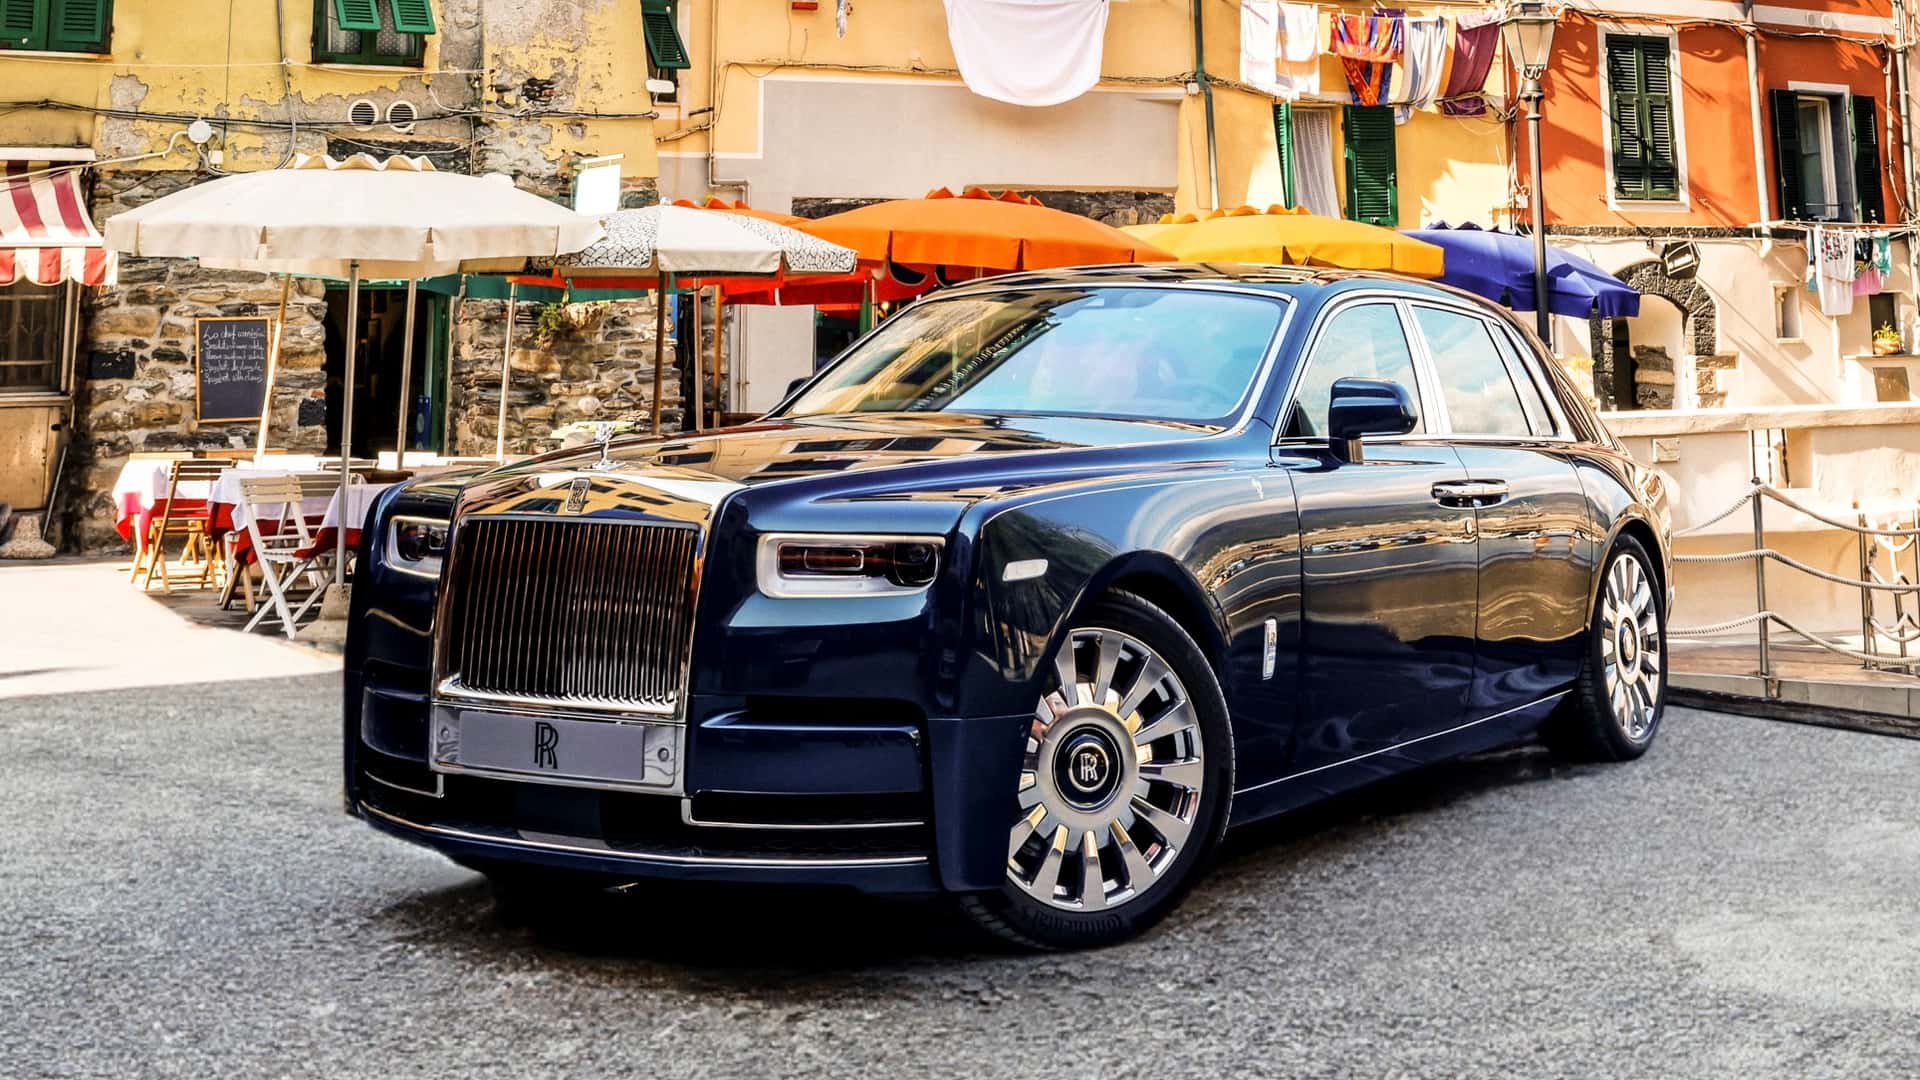 Rolls-Royce Phantom phiên bản đặc biệt Cinque Terre lấy cảm hứng từ 5 ngôi làng ven biển nước Ý